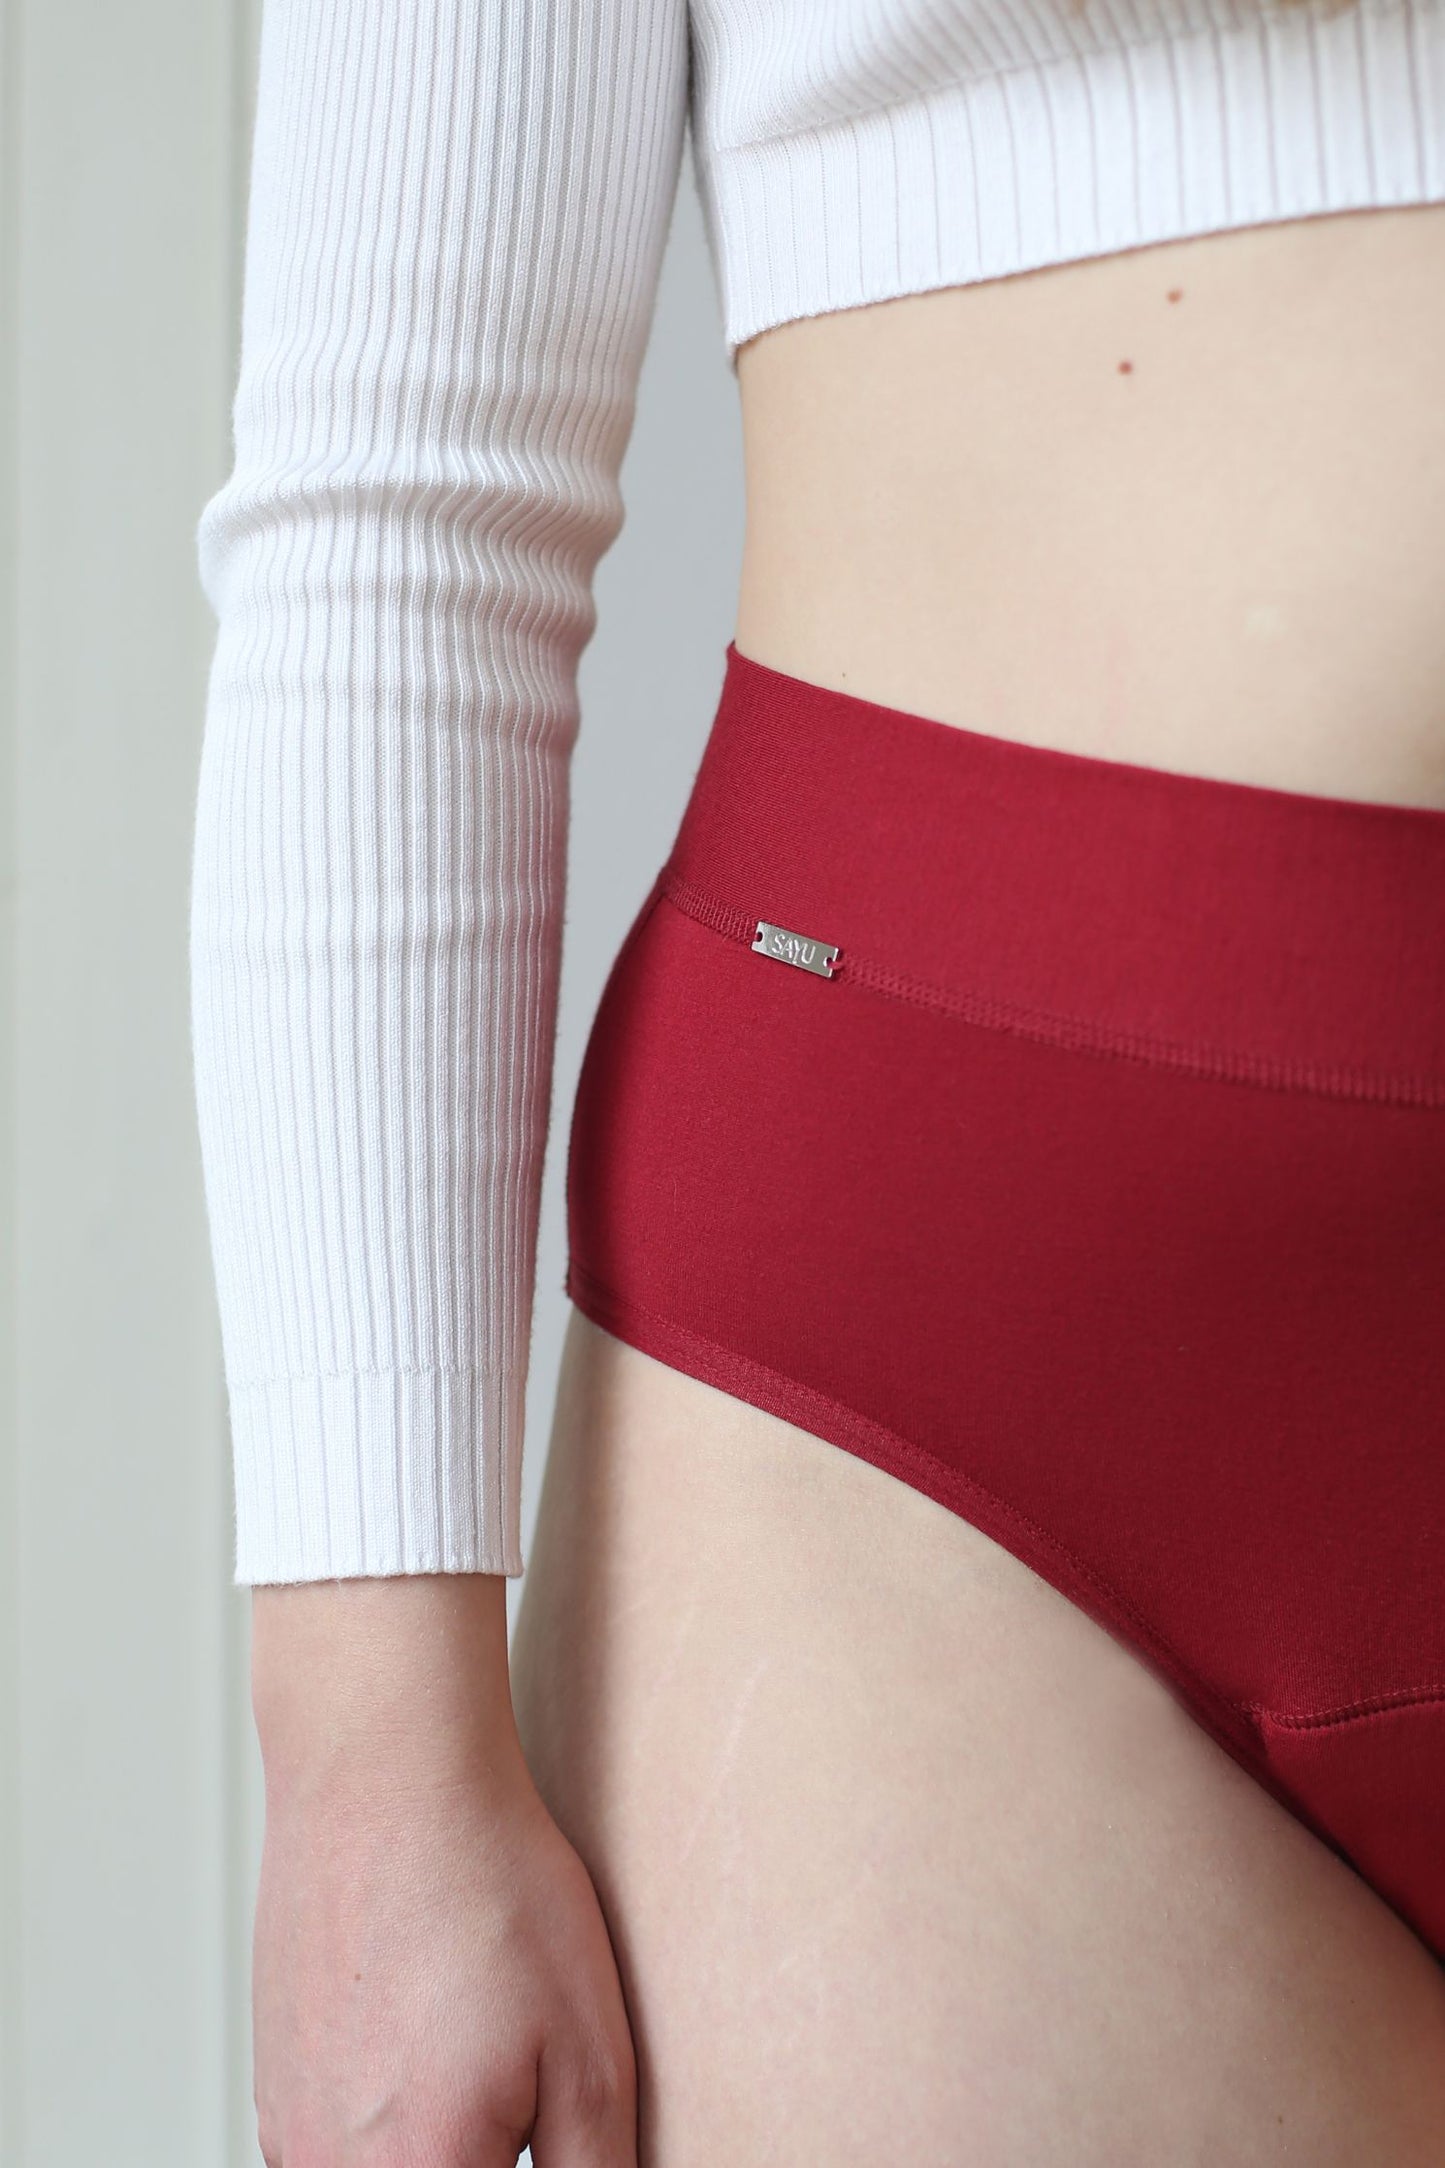 detail na zdobný prvek na menstruačních bordó kalhotkách na spaní s logem SAYU